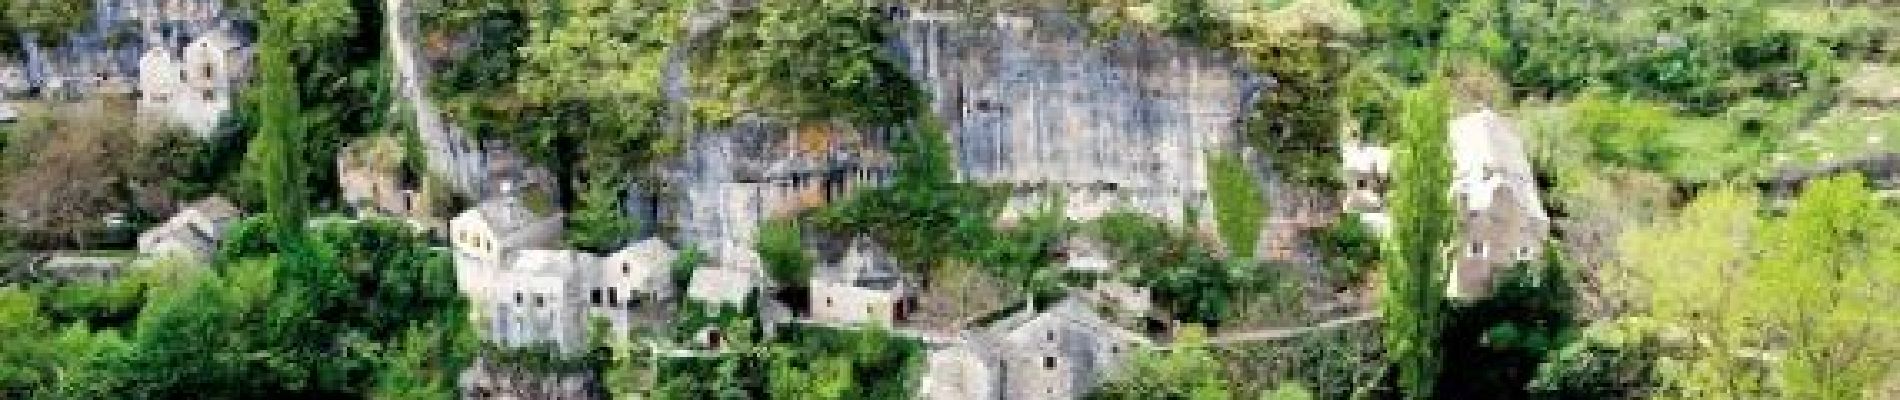 POI Gorges du Tarn Causses - Village de Castelbouc - Photo